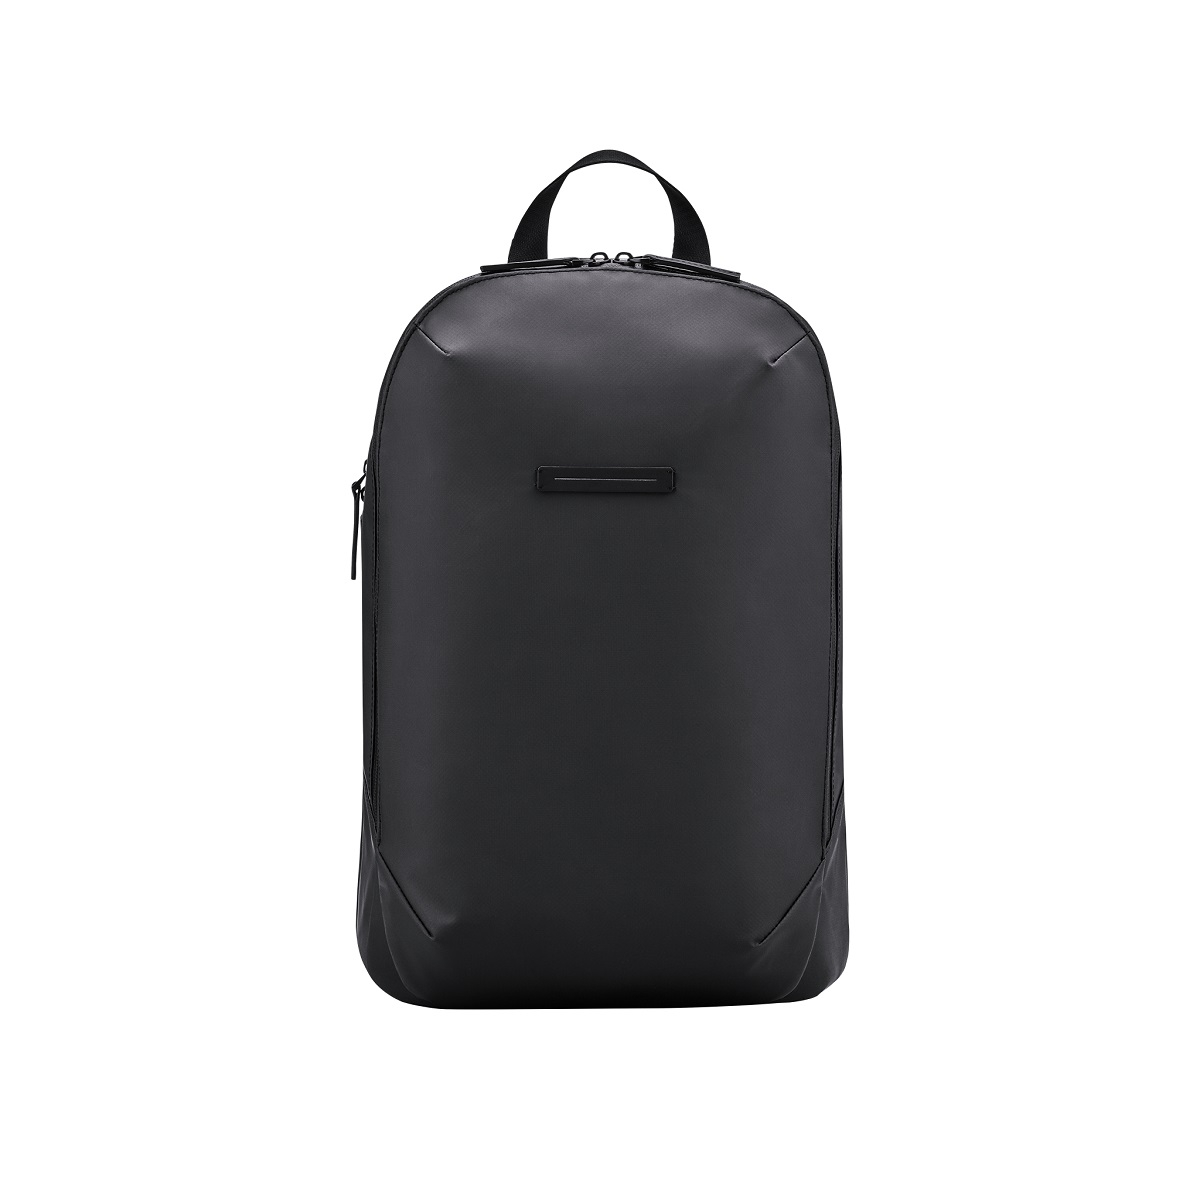 Image of Gion Backpack in schwarz Grösse M